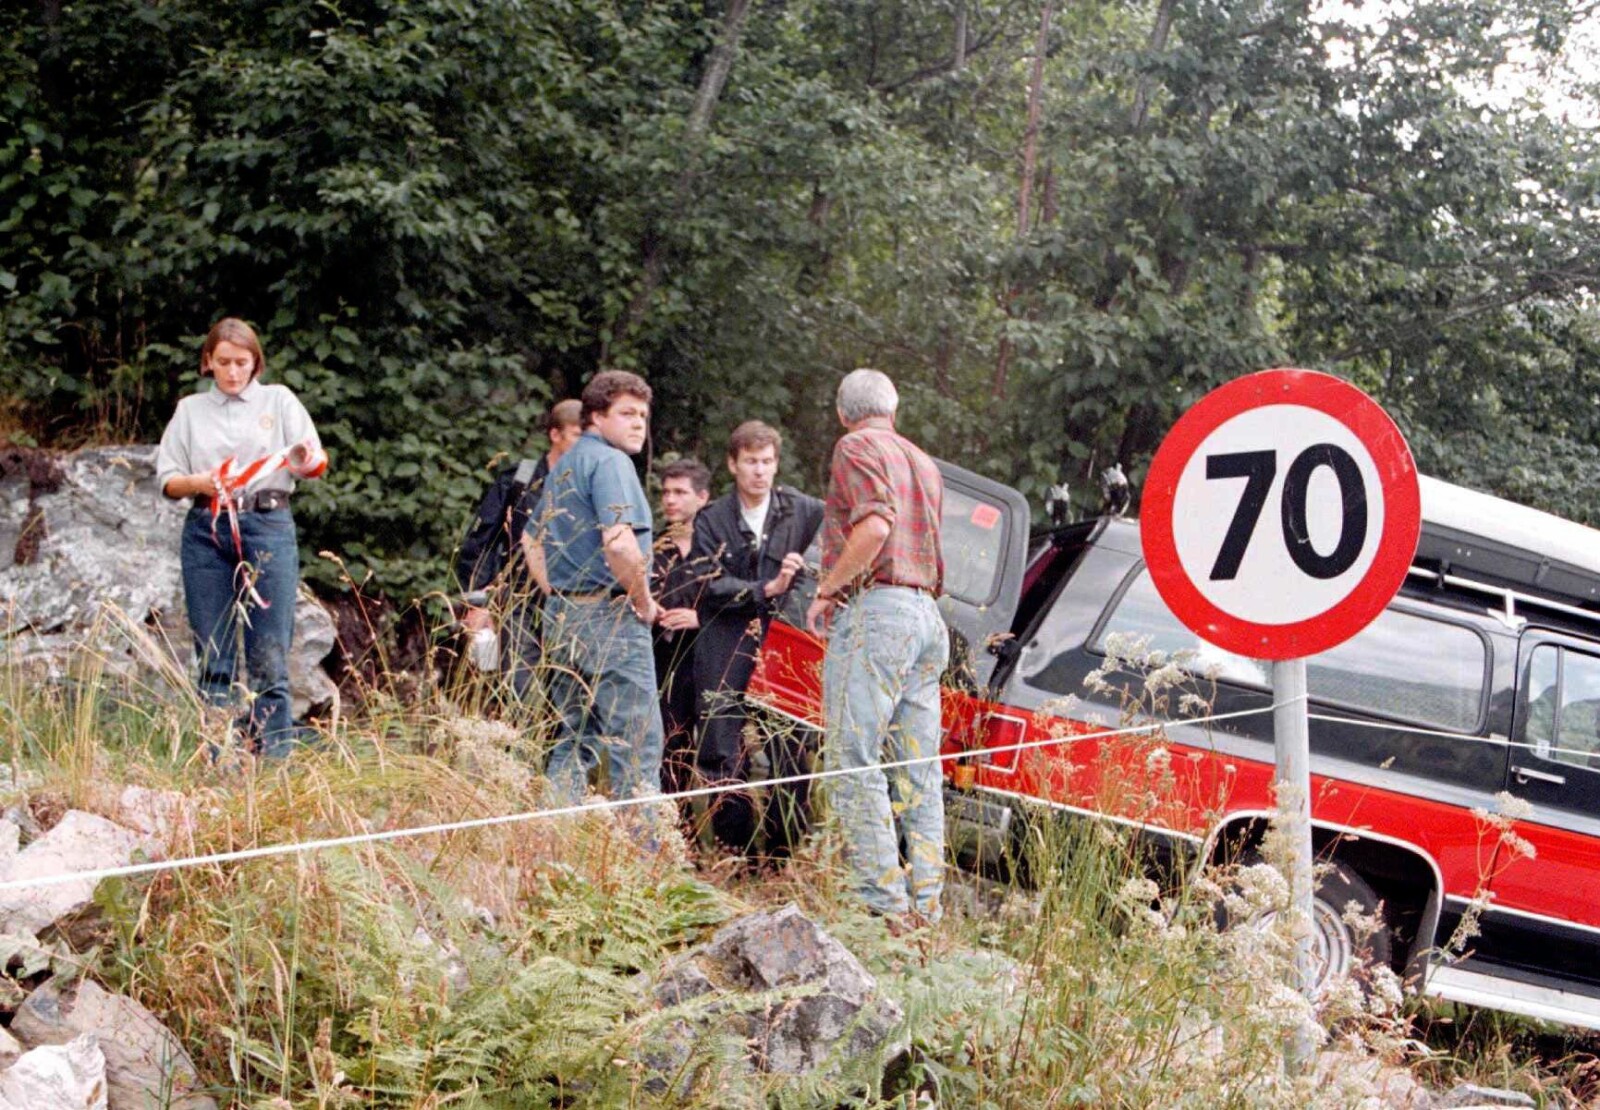 <b>ÅPNE SÅR:</b> Levningene av Trude Espås ble funnet i Geiranger i 1996. Drapet er fortsatt uløst, men blir aldri foreldet. Én av etterforskerne i blå skjorte på bildet er Asbjørn Hansen, nå pensjonert fra politiet og ekspert i TV-programmet Åsted Norge.